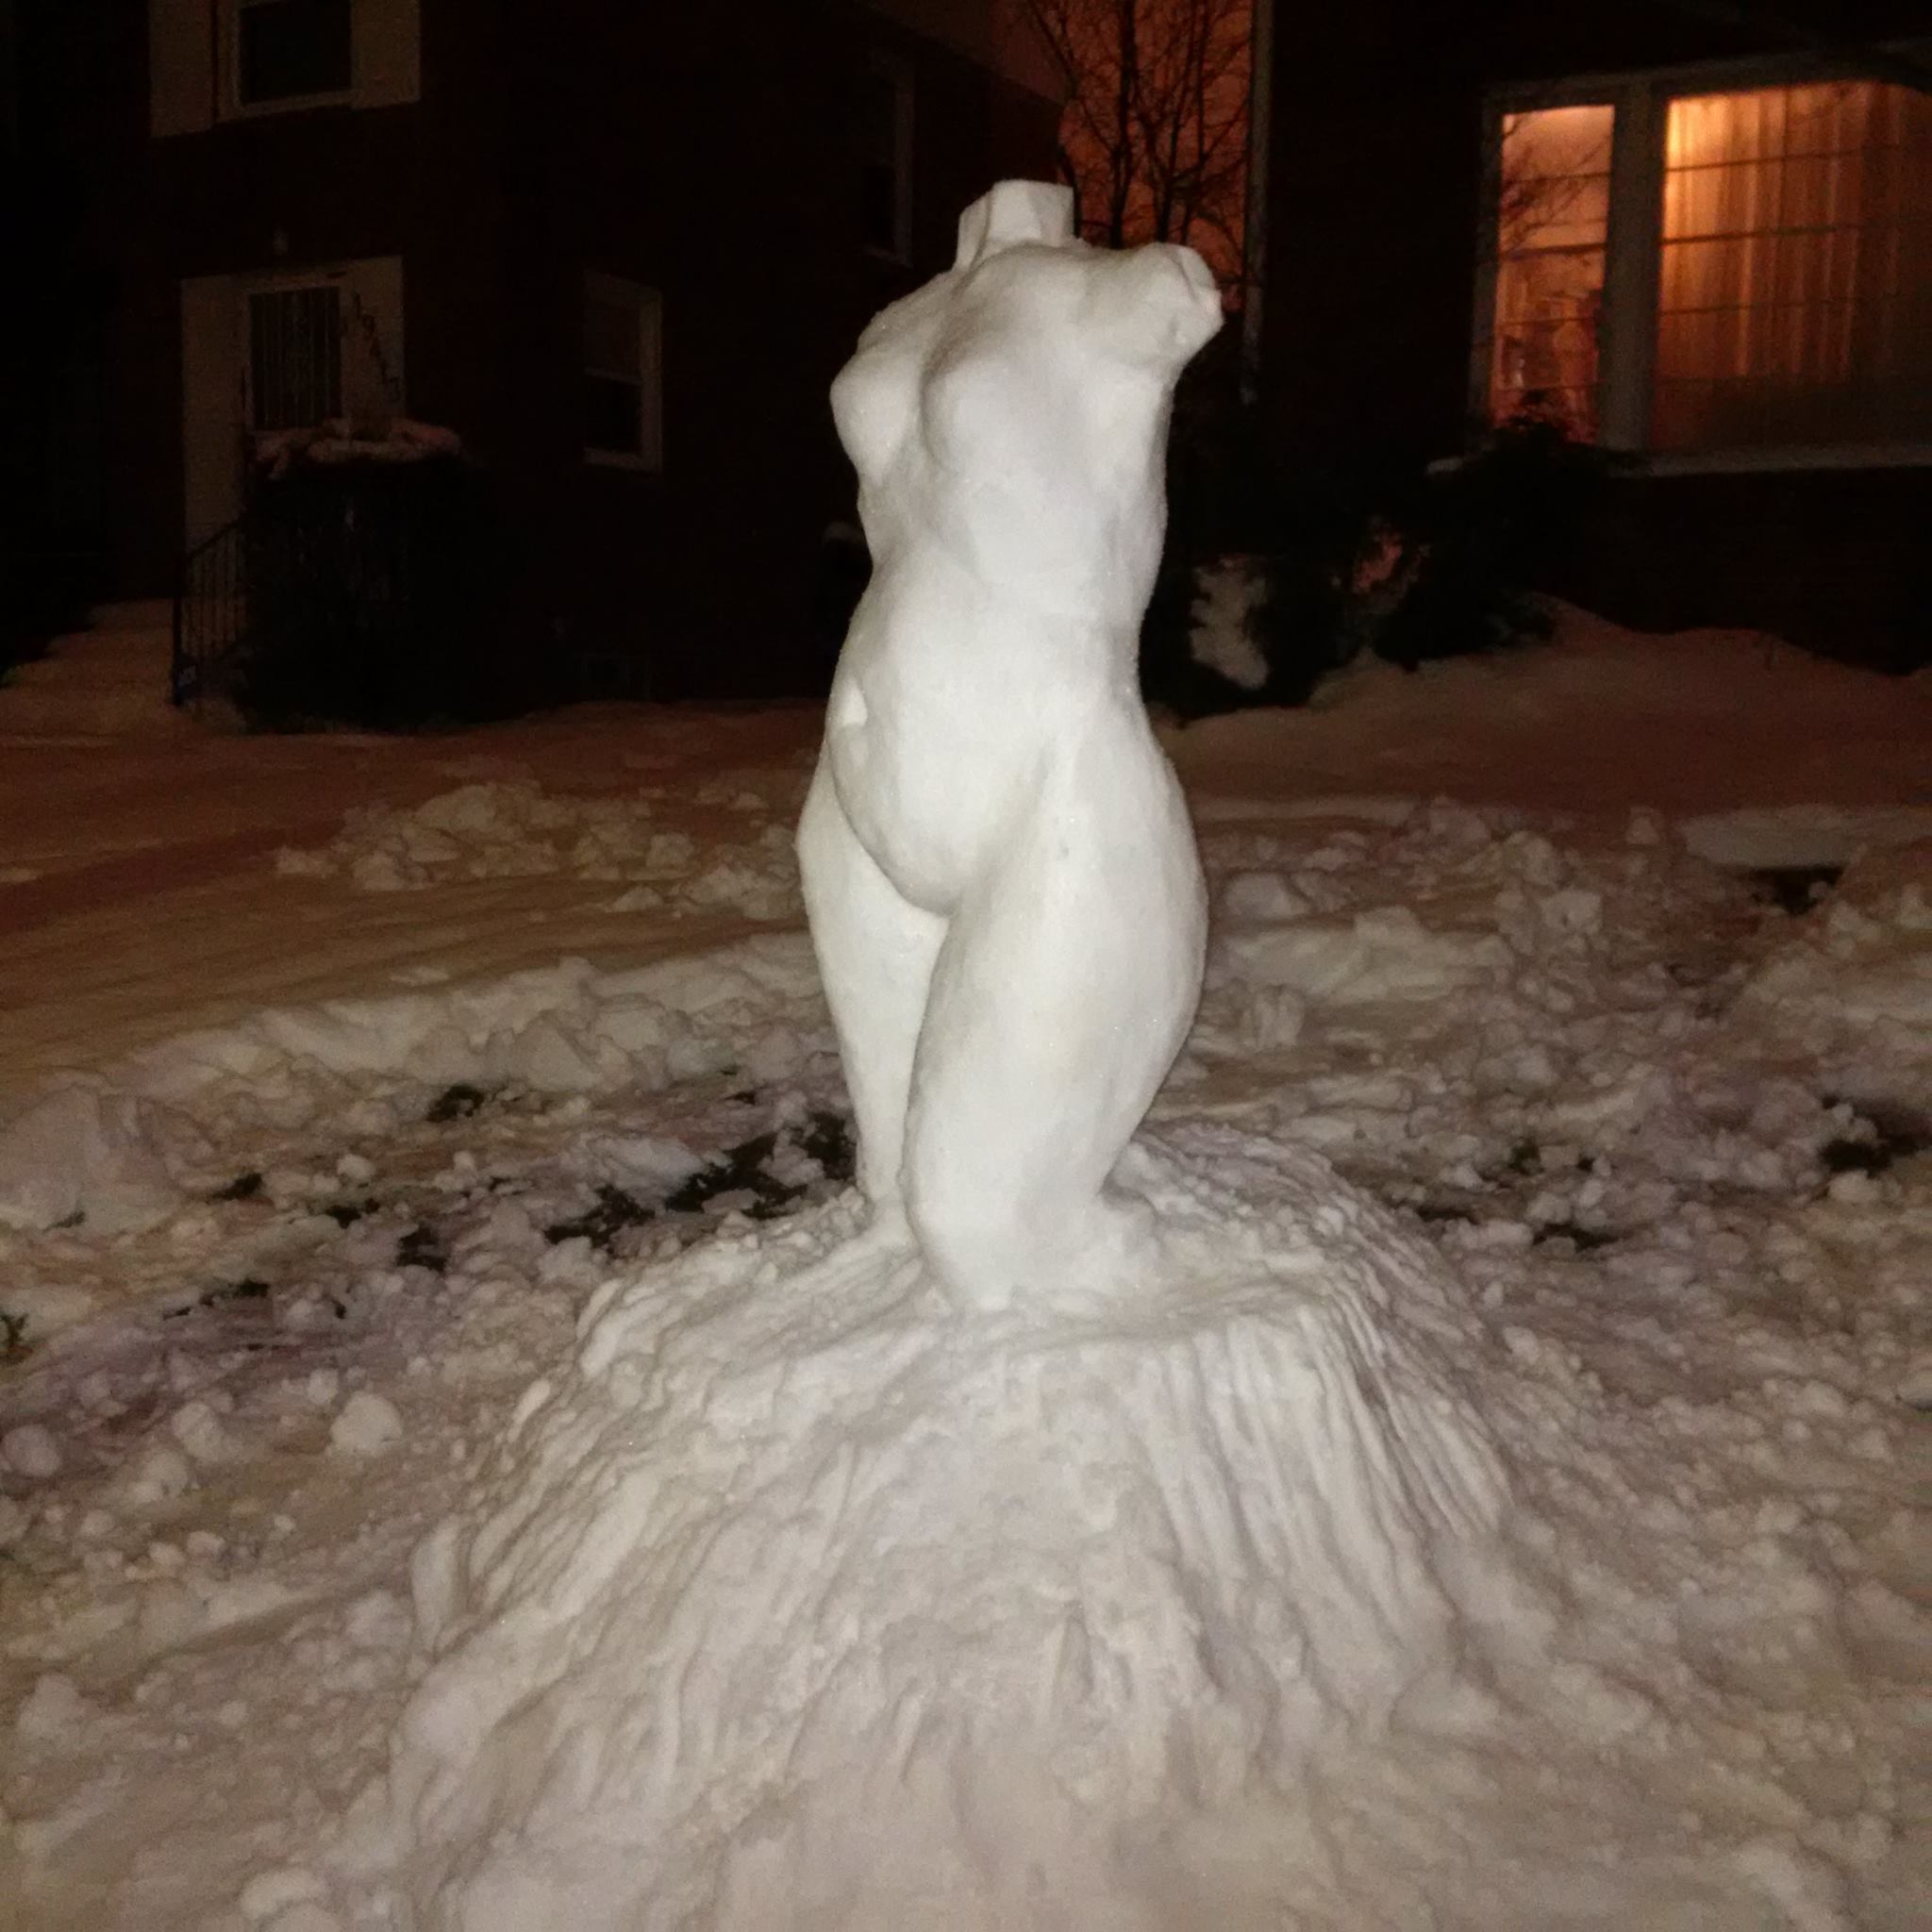 Venus in the Snow